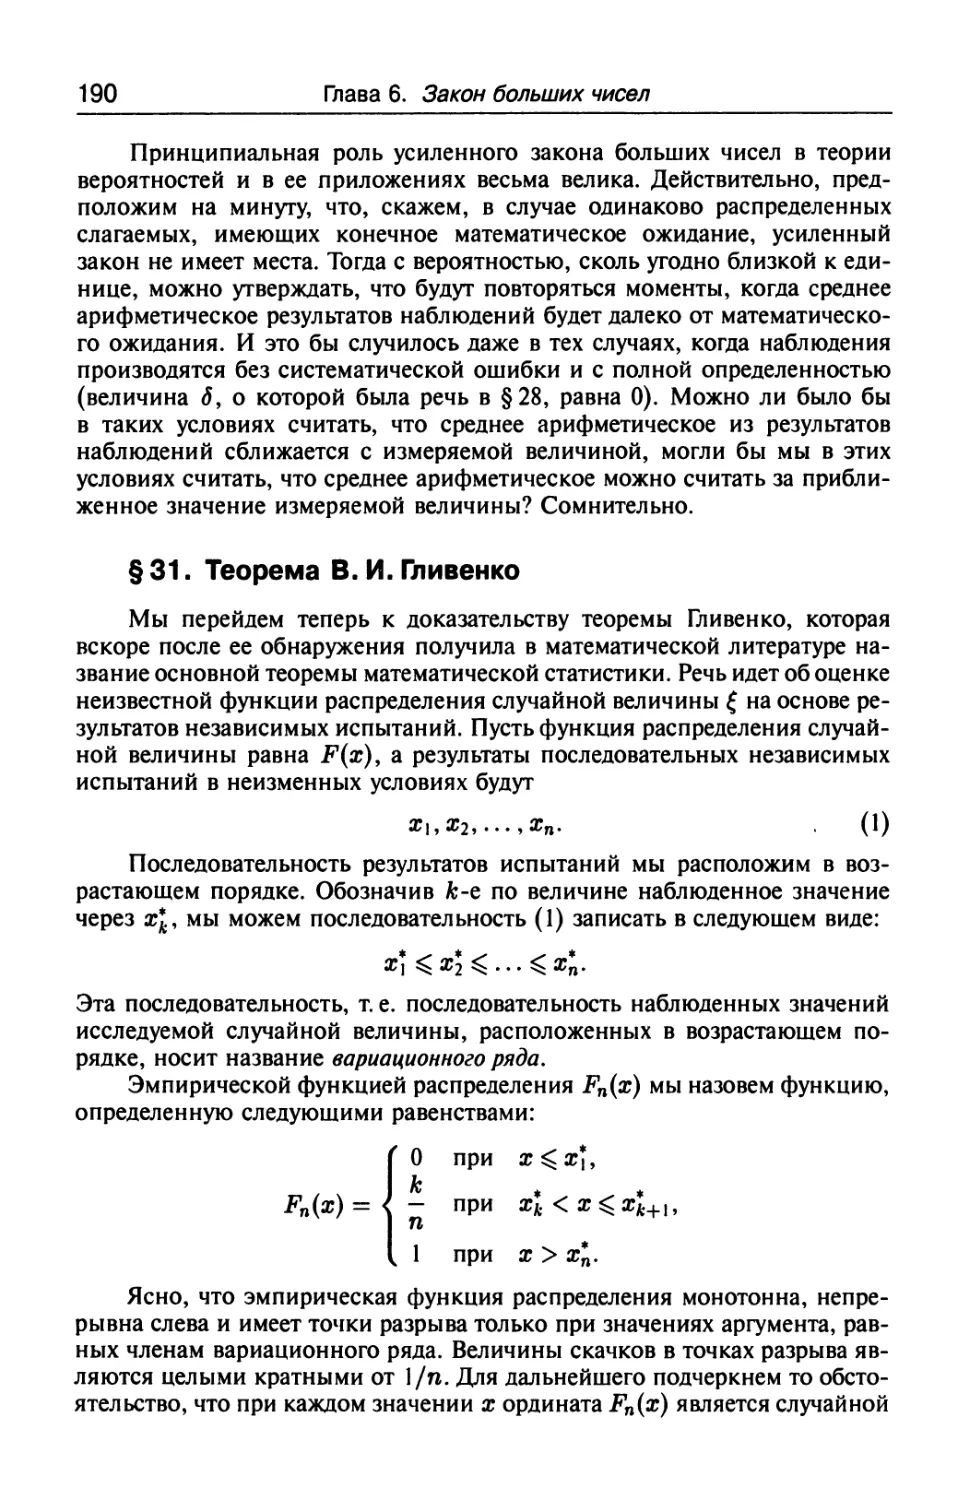 § 31. Теорема В. И. Гливенко